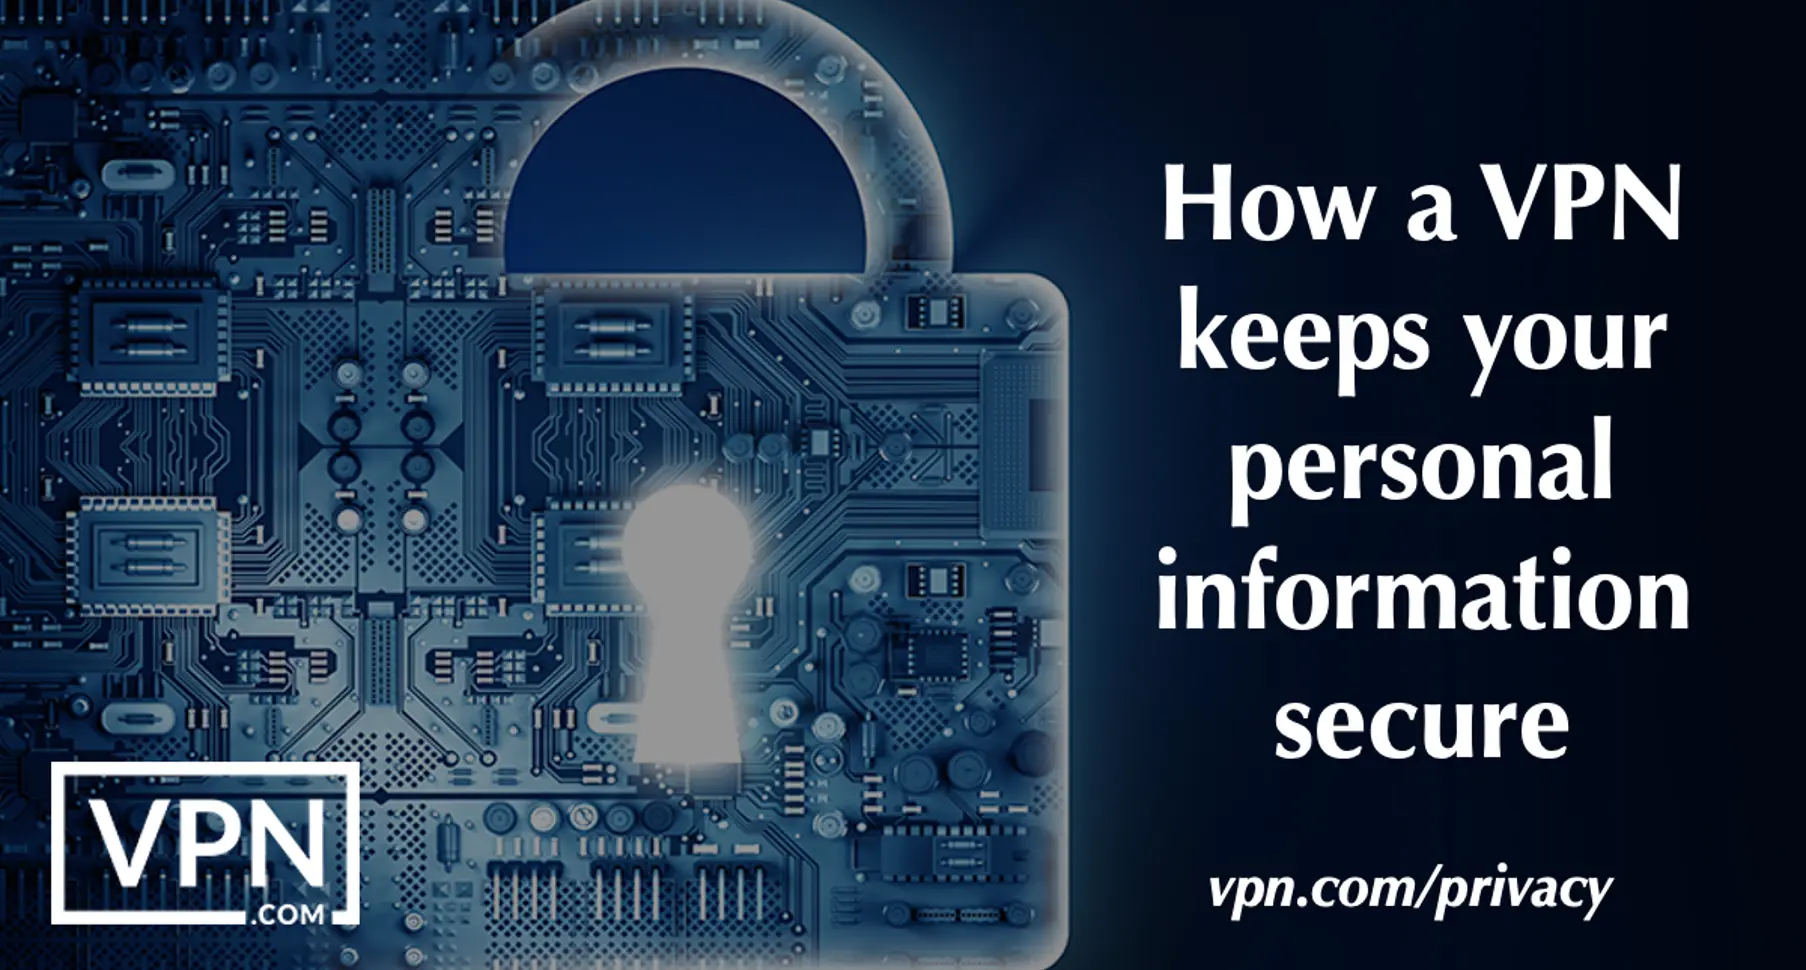 Cómo una VPN para la privacidad mantiene segura su información personal.